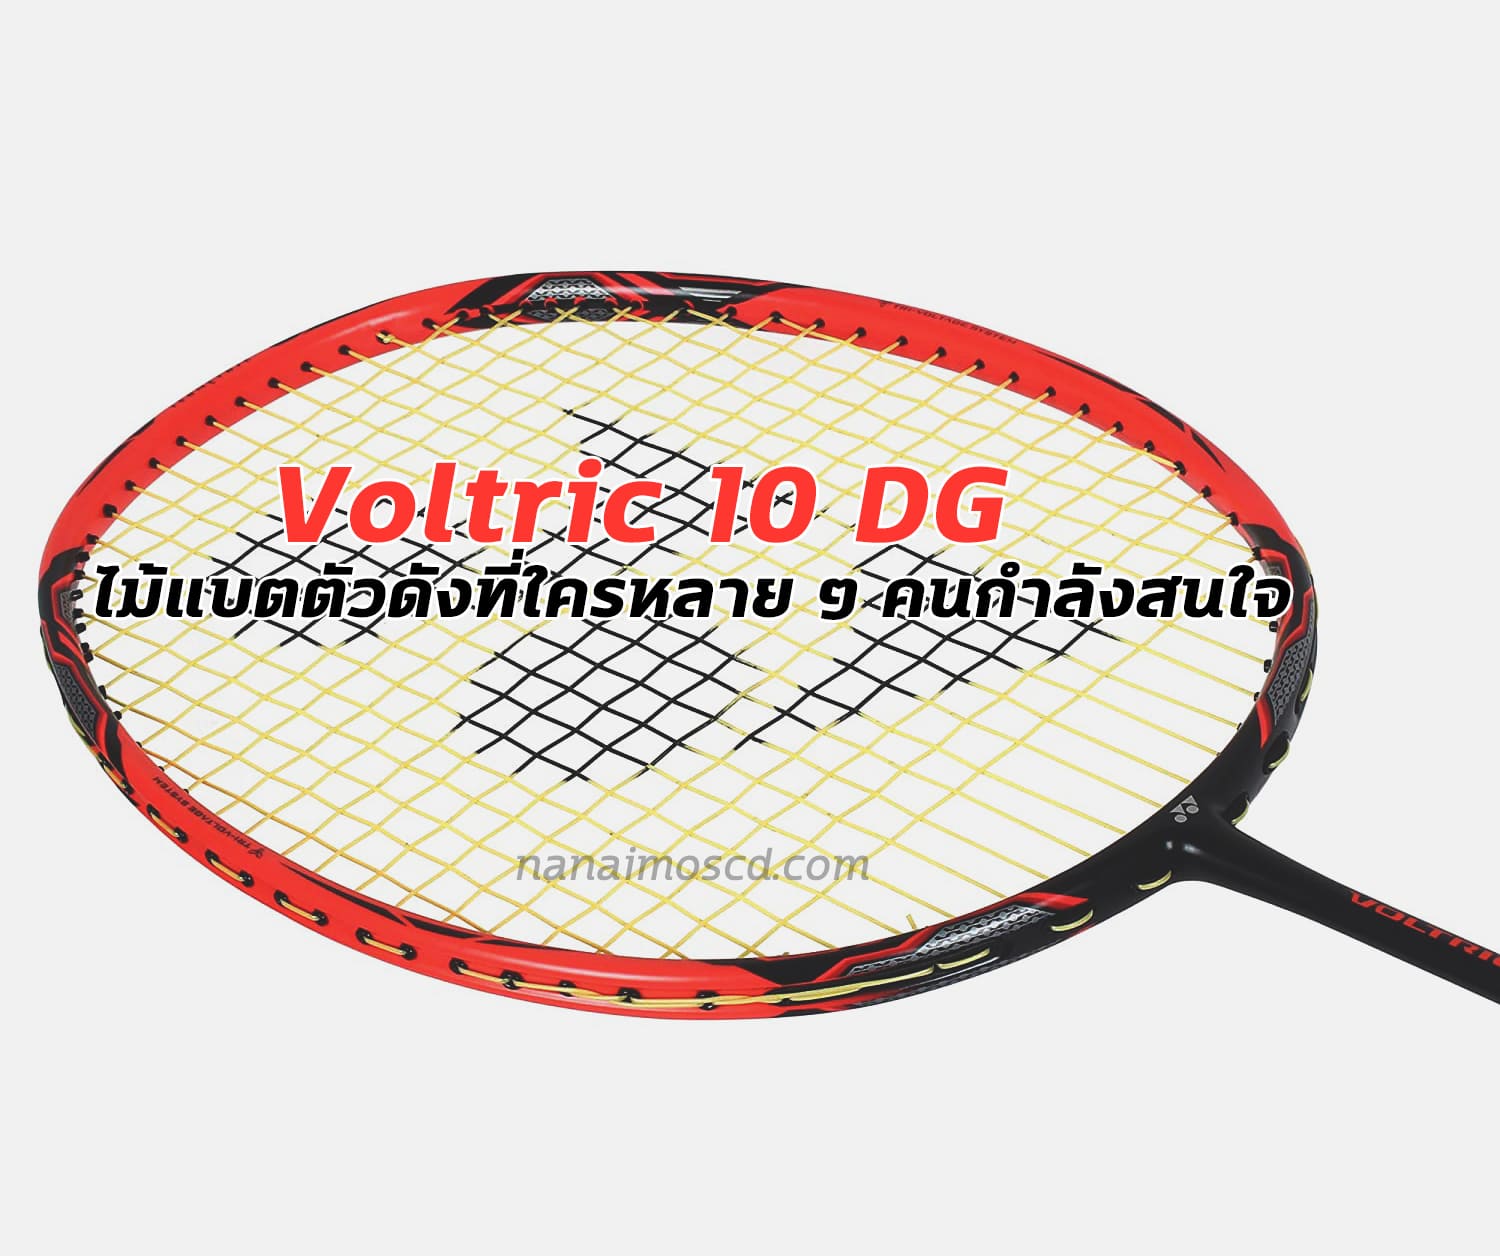 Voltric 10 DG3